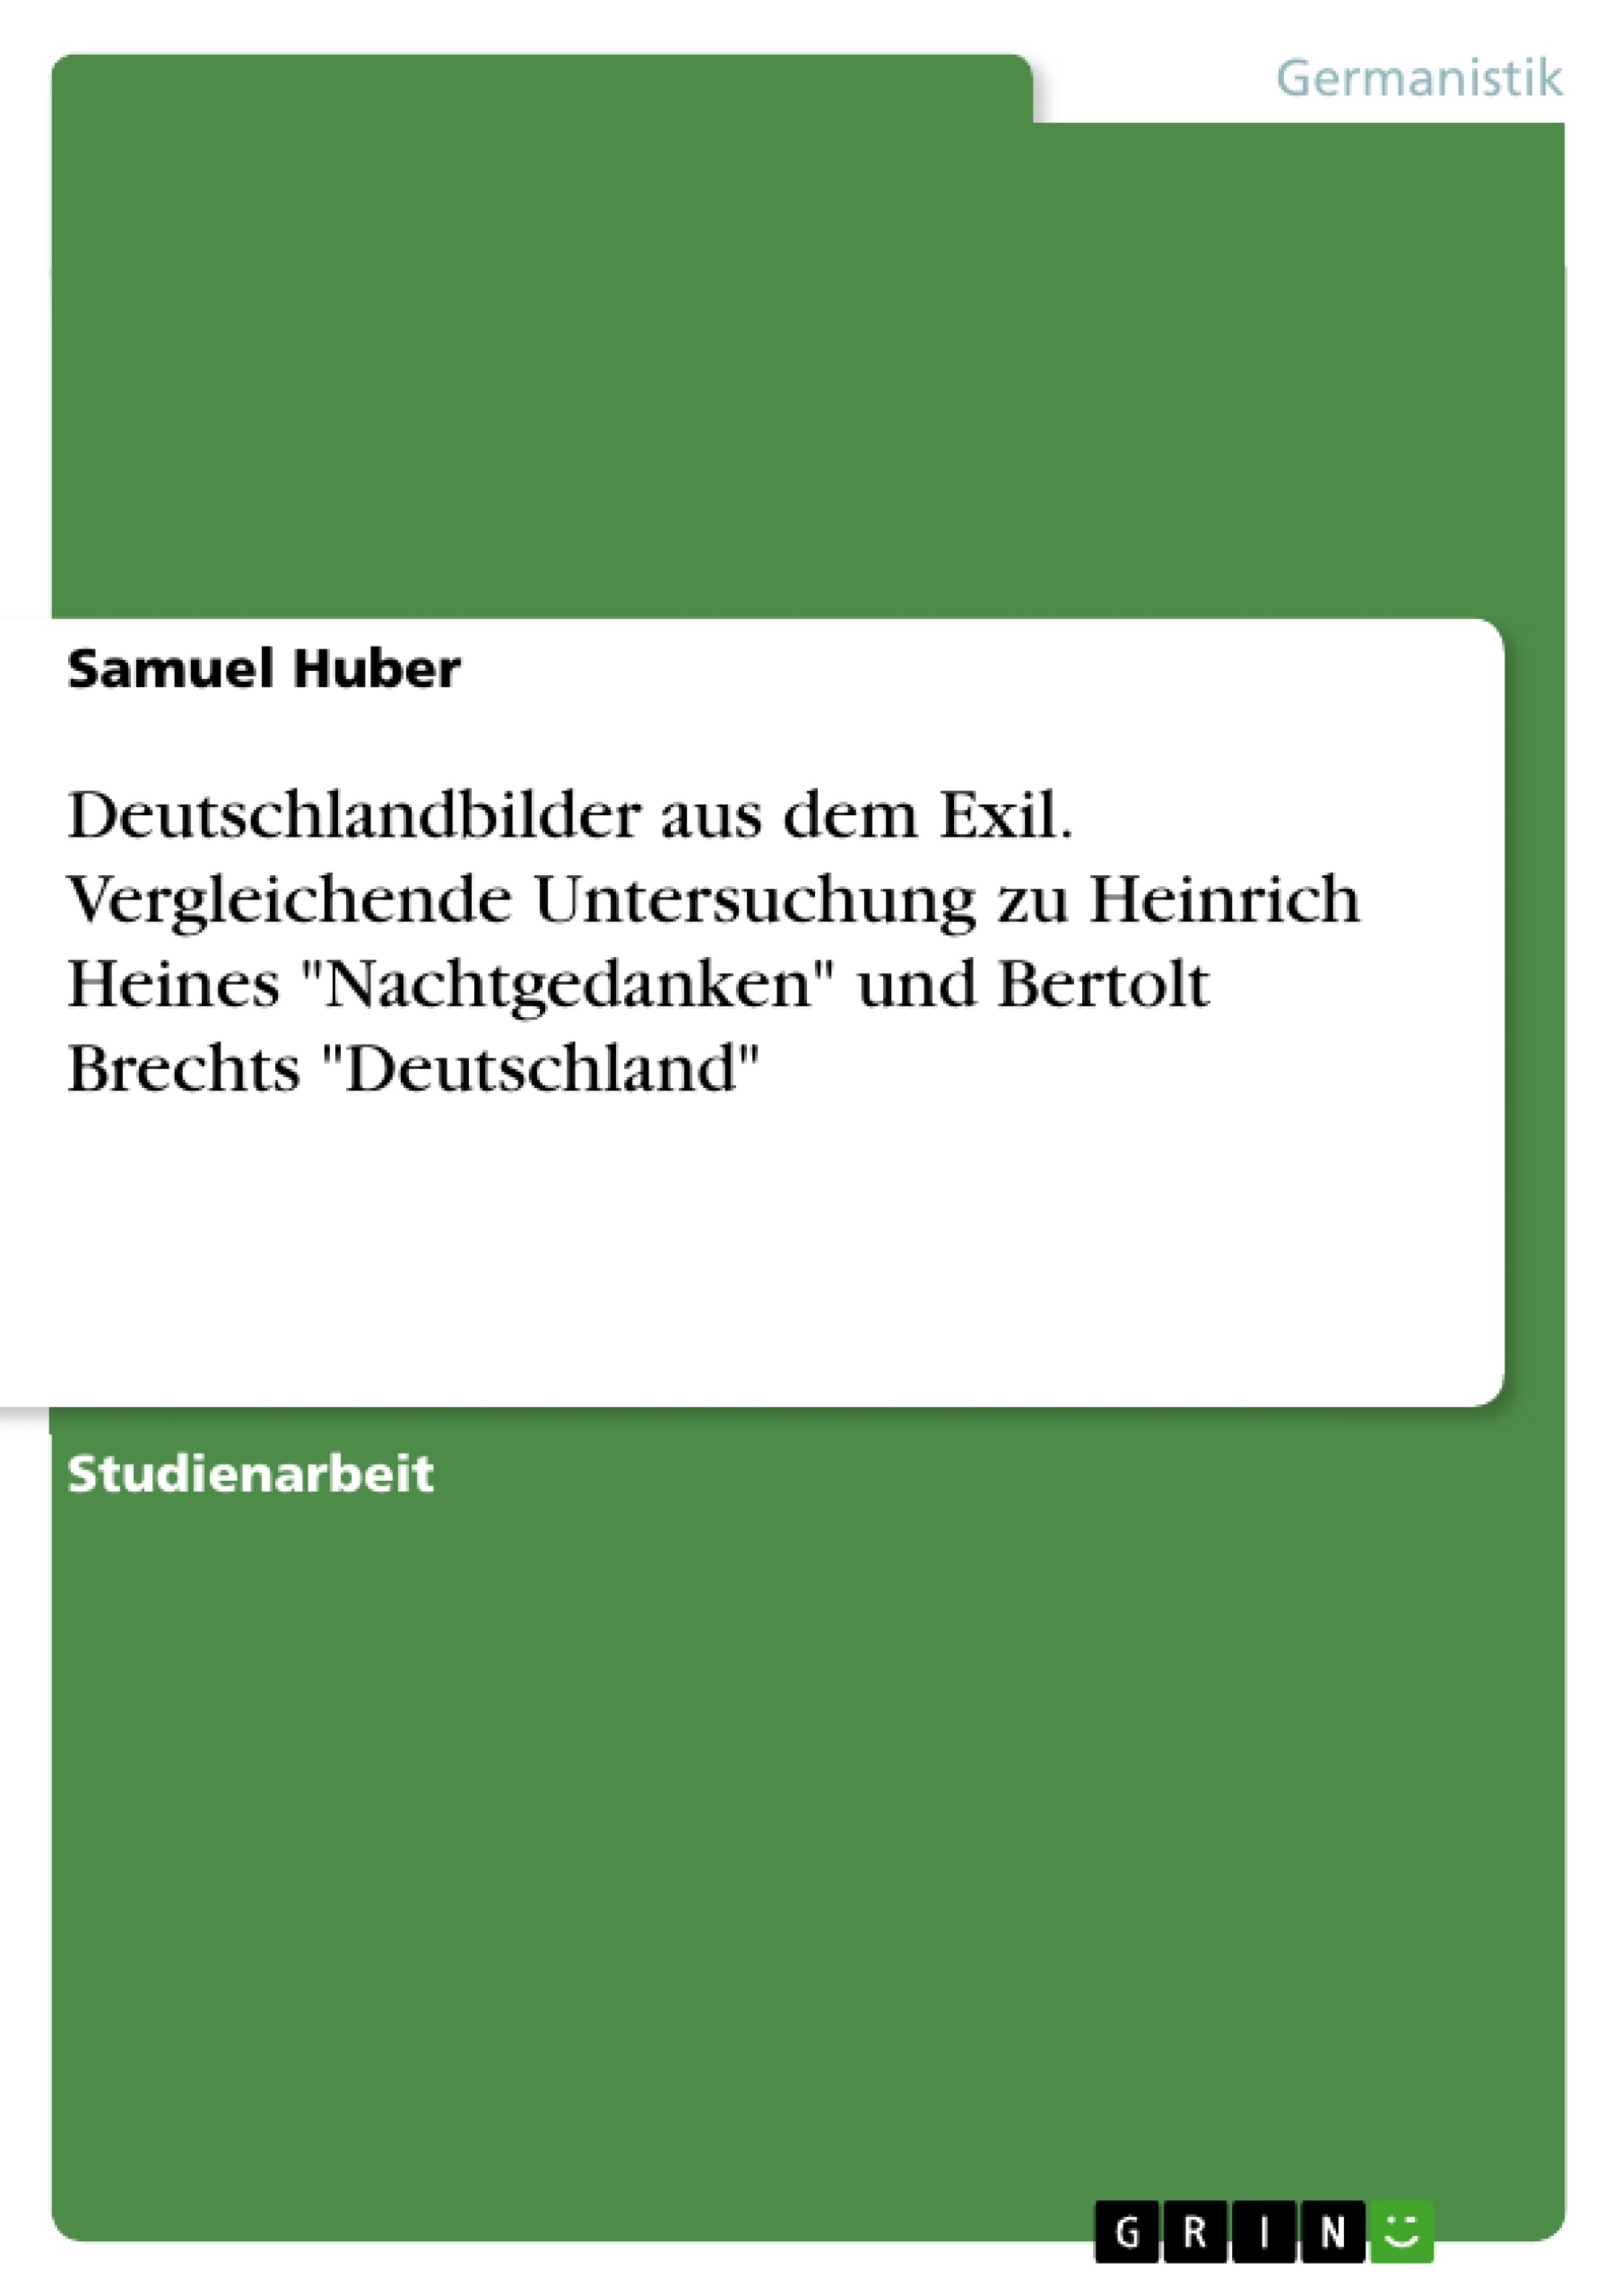 Titel: Deutschlandbilder aus dem Exil. Vergleichende Untersuchung zu Heinrich Heines "Nachtgedanken" und Bertolt Brechts "Deutschland"